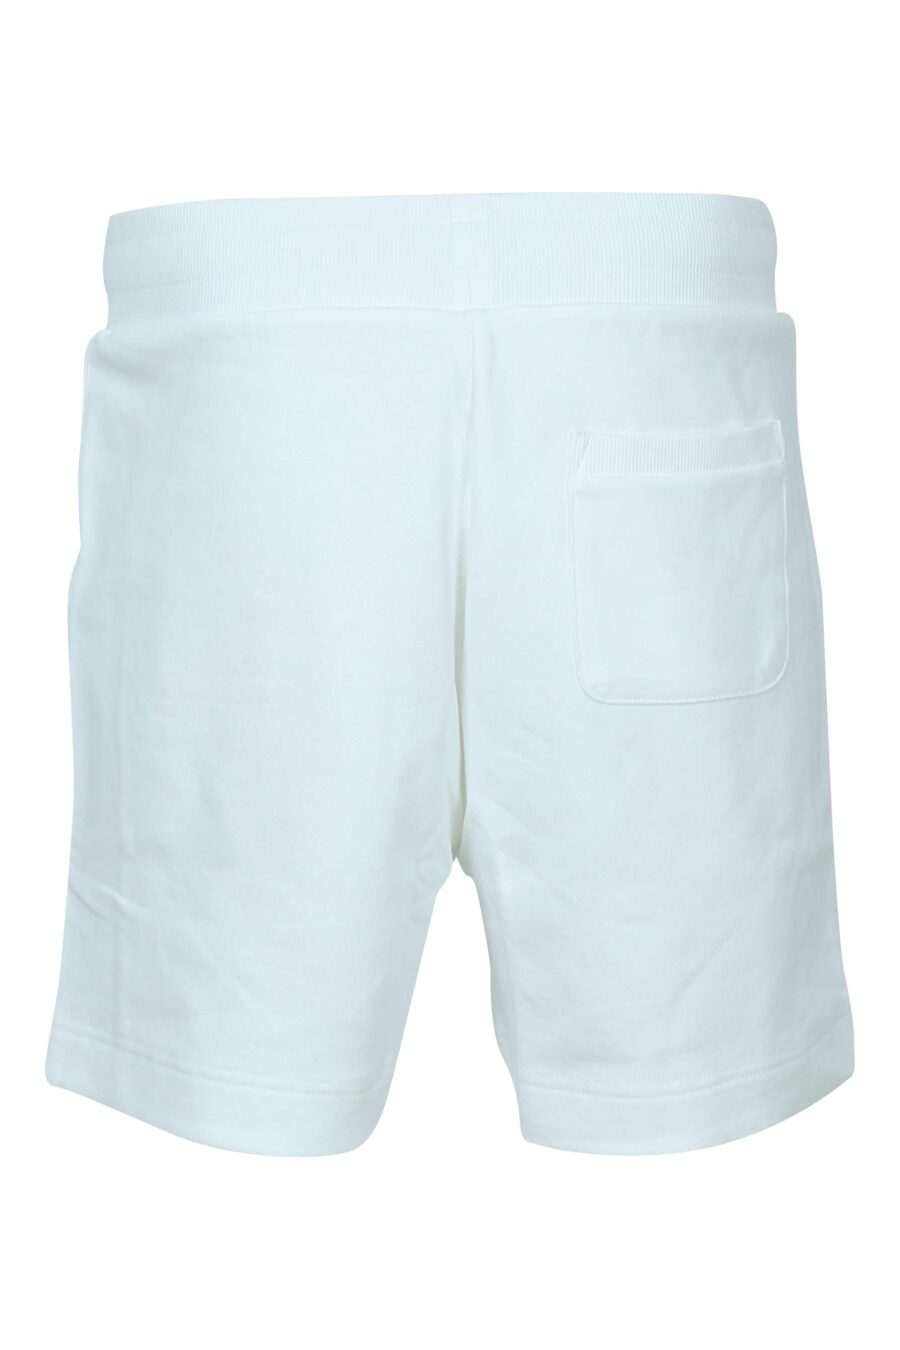 Pantalón de chándal blanco corto con logo monocromático de goma lateral - 667113684420 1